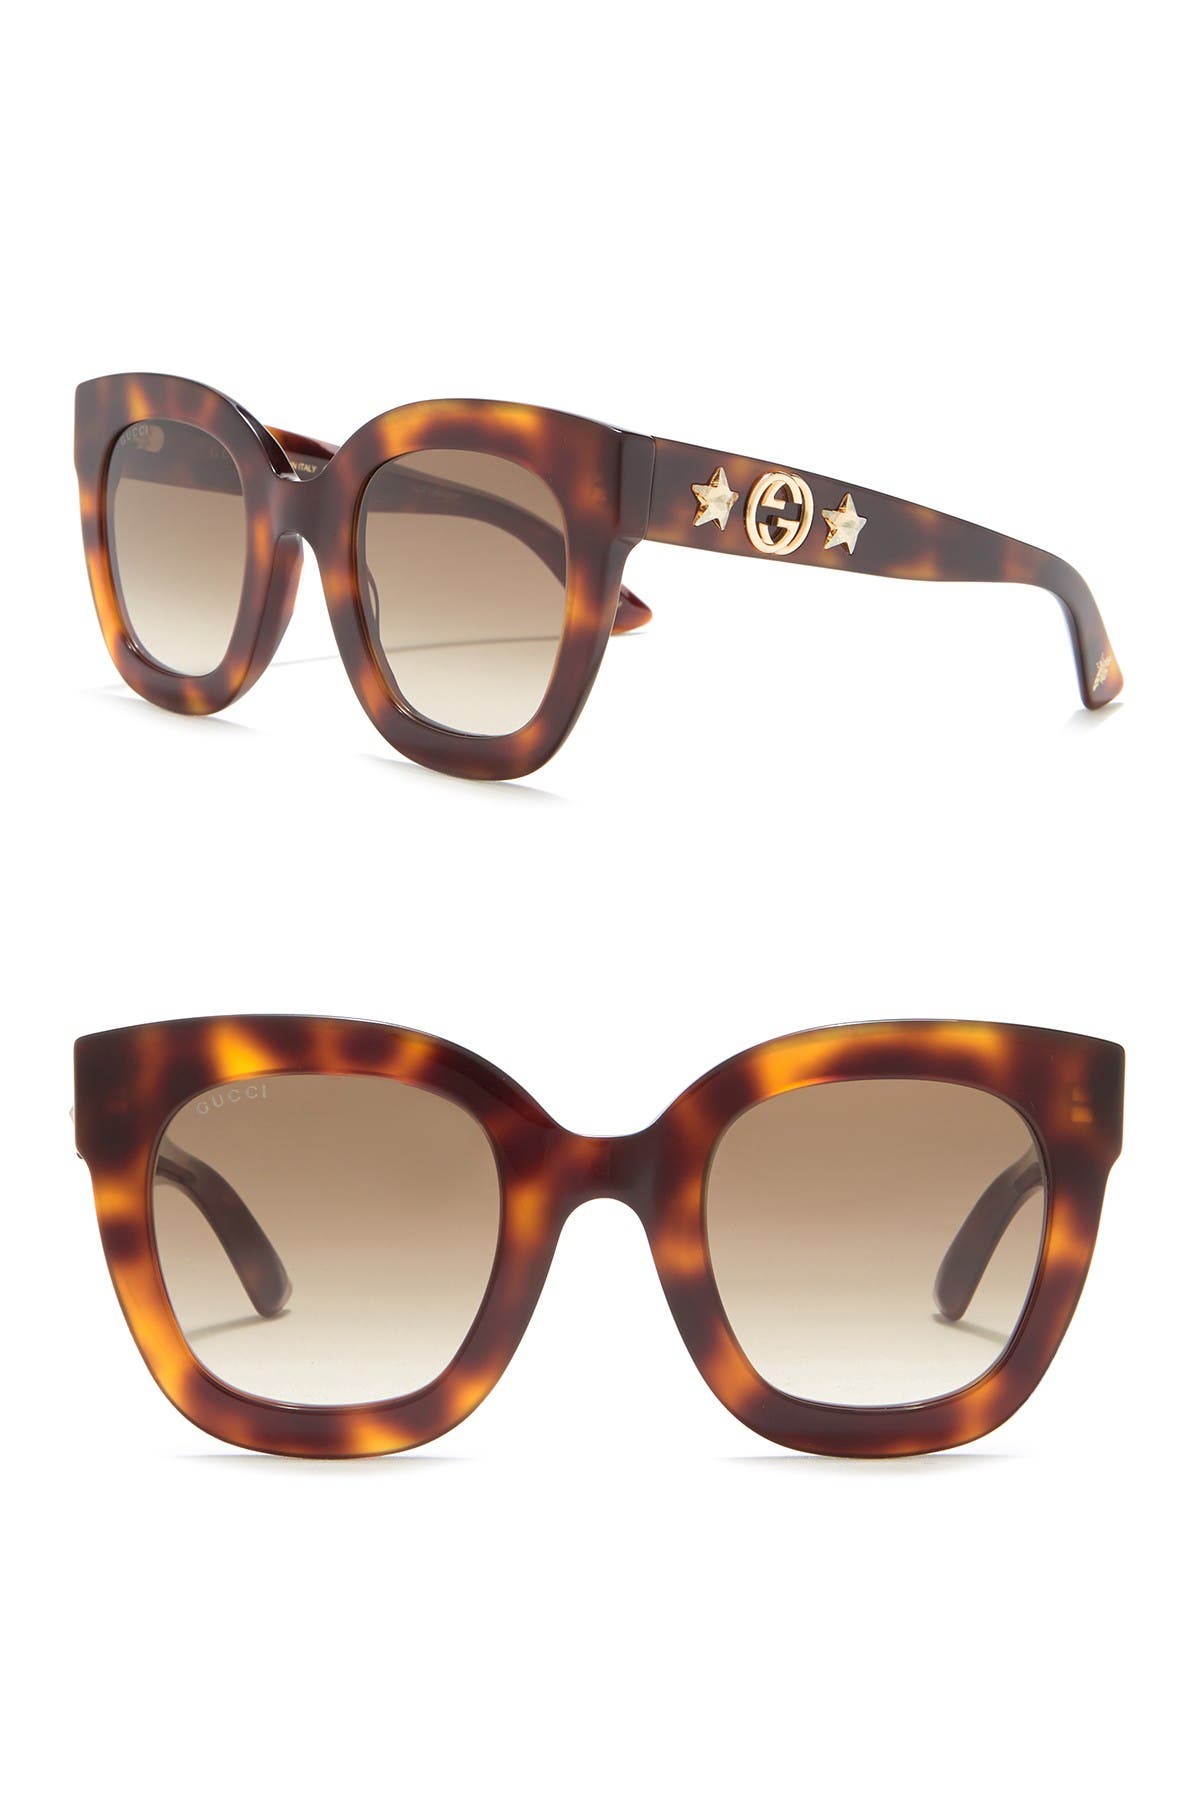 gucci 49mm cat eye sunglasses